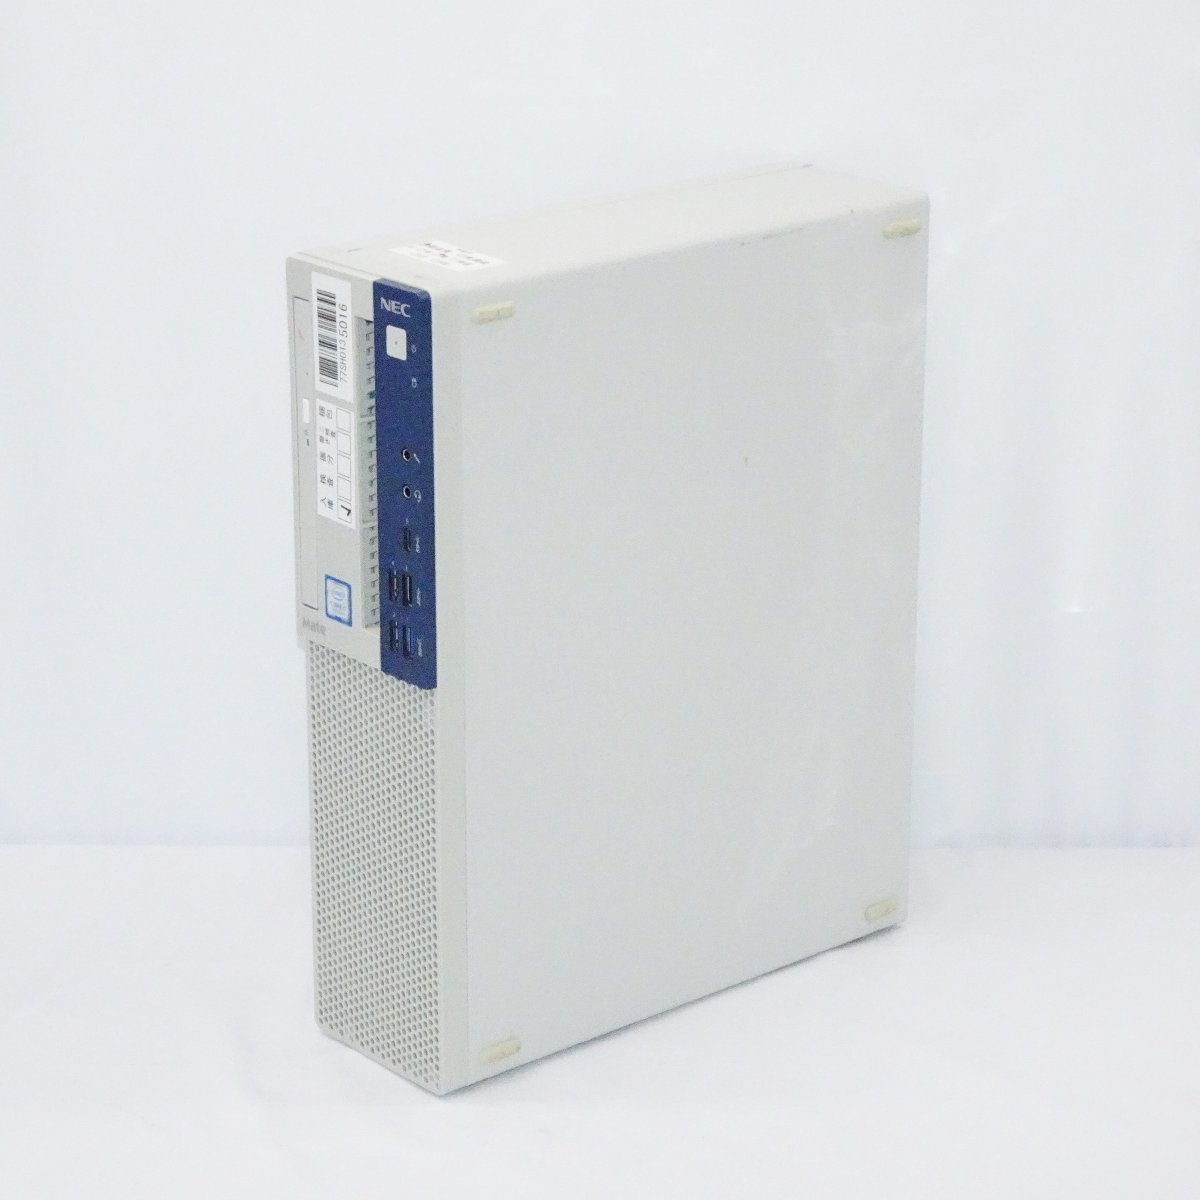 NEC Mate MKH32B-4 Core i7-8700 3.2GHz/8GB/HDD500GB/DVD/OS無/動作未確認【栃木出荷】_画像1